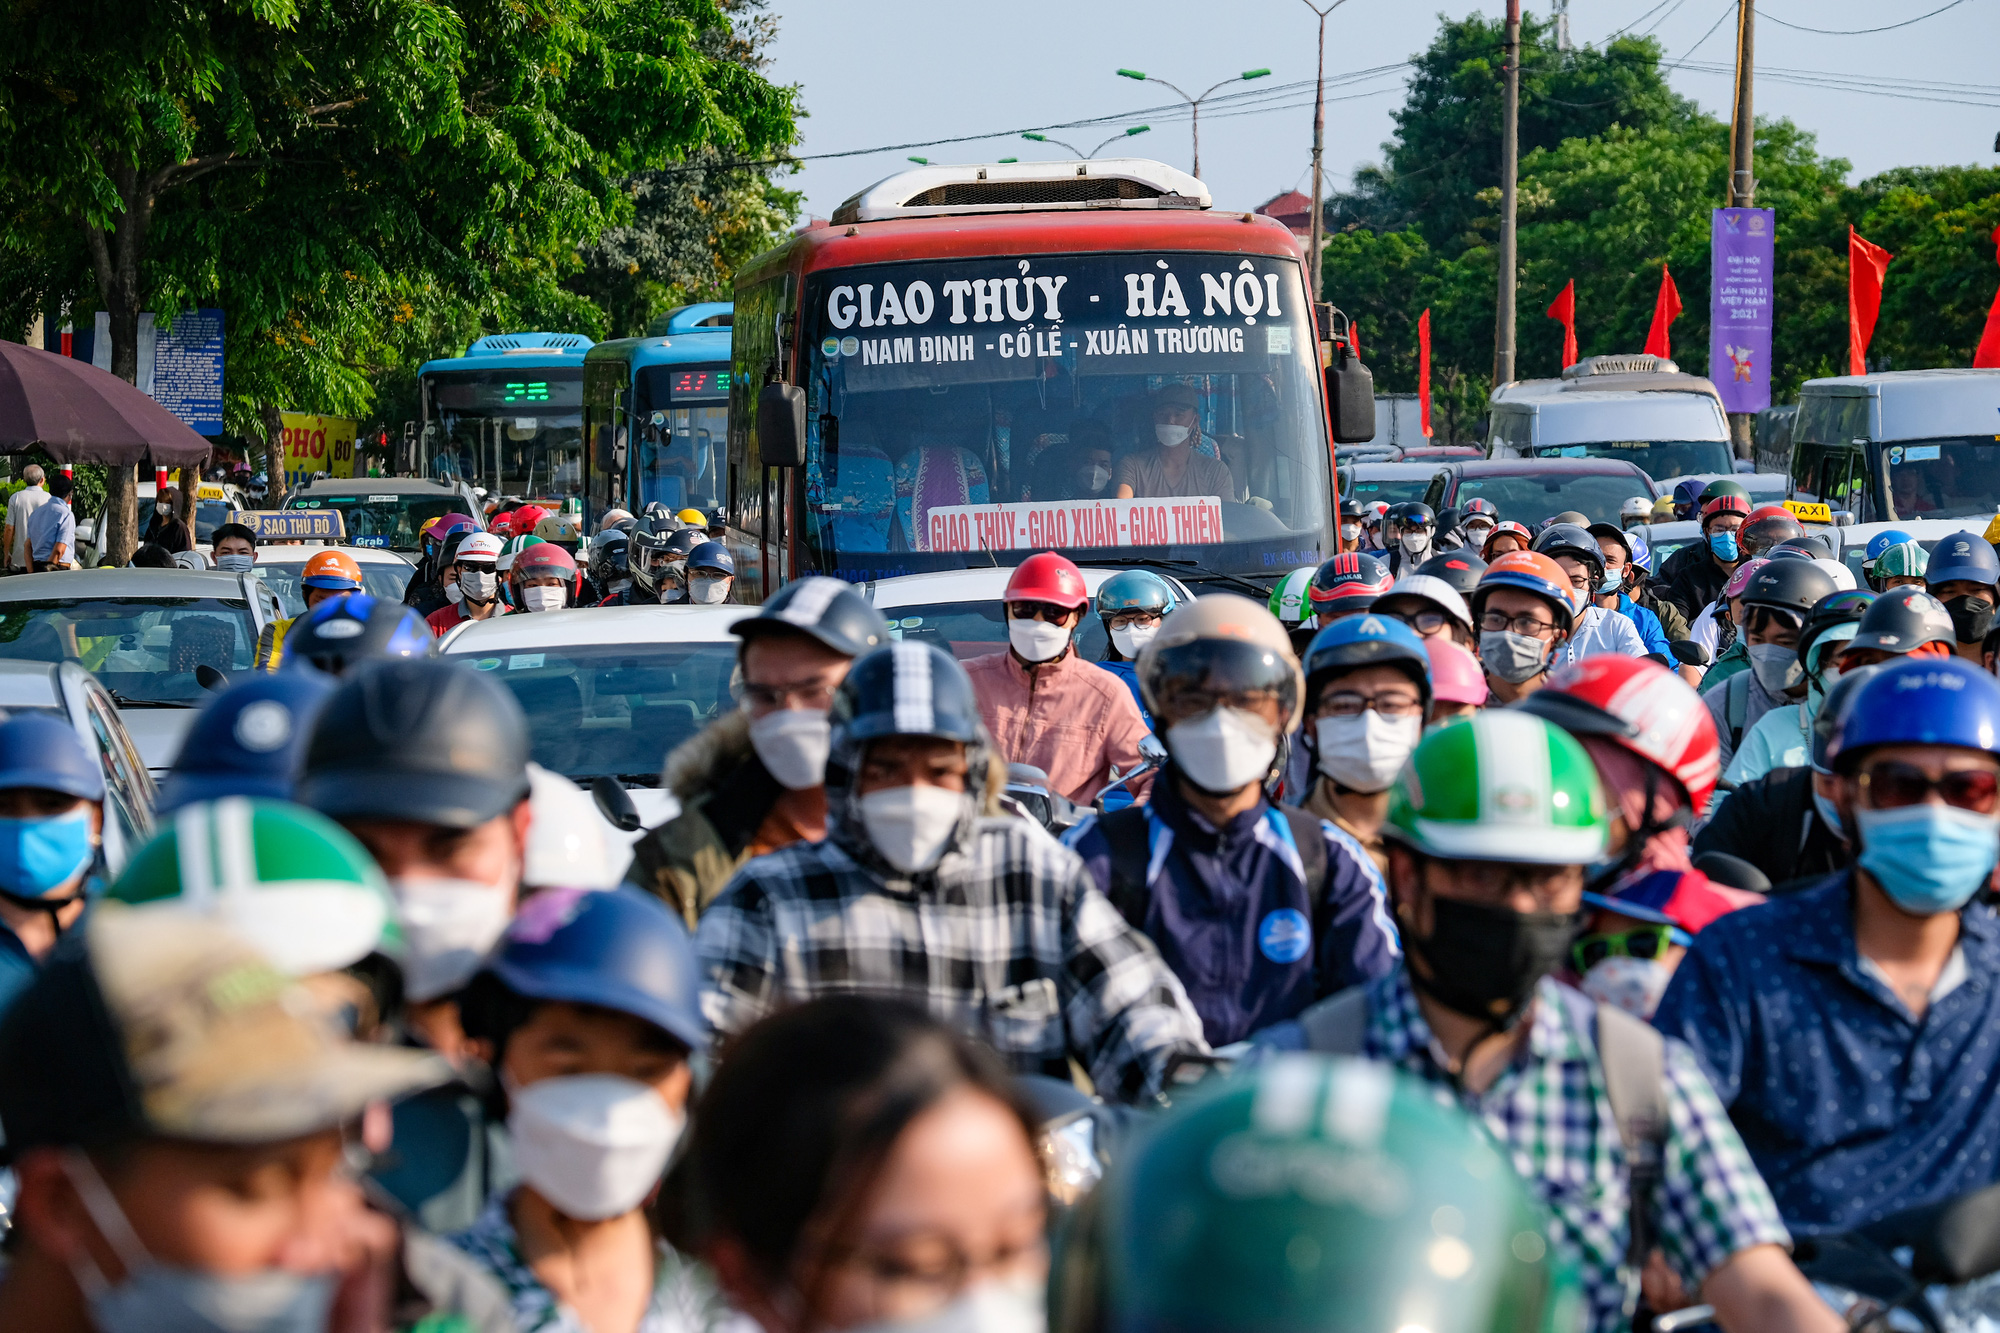 Chưa kết thúc nghỉ lễ, người dân đã lo trở lại Hà Nội vì nỗi lo tắc đường - Ảnh 2.